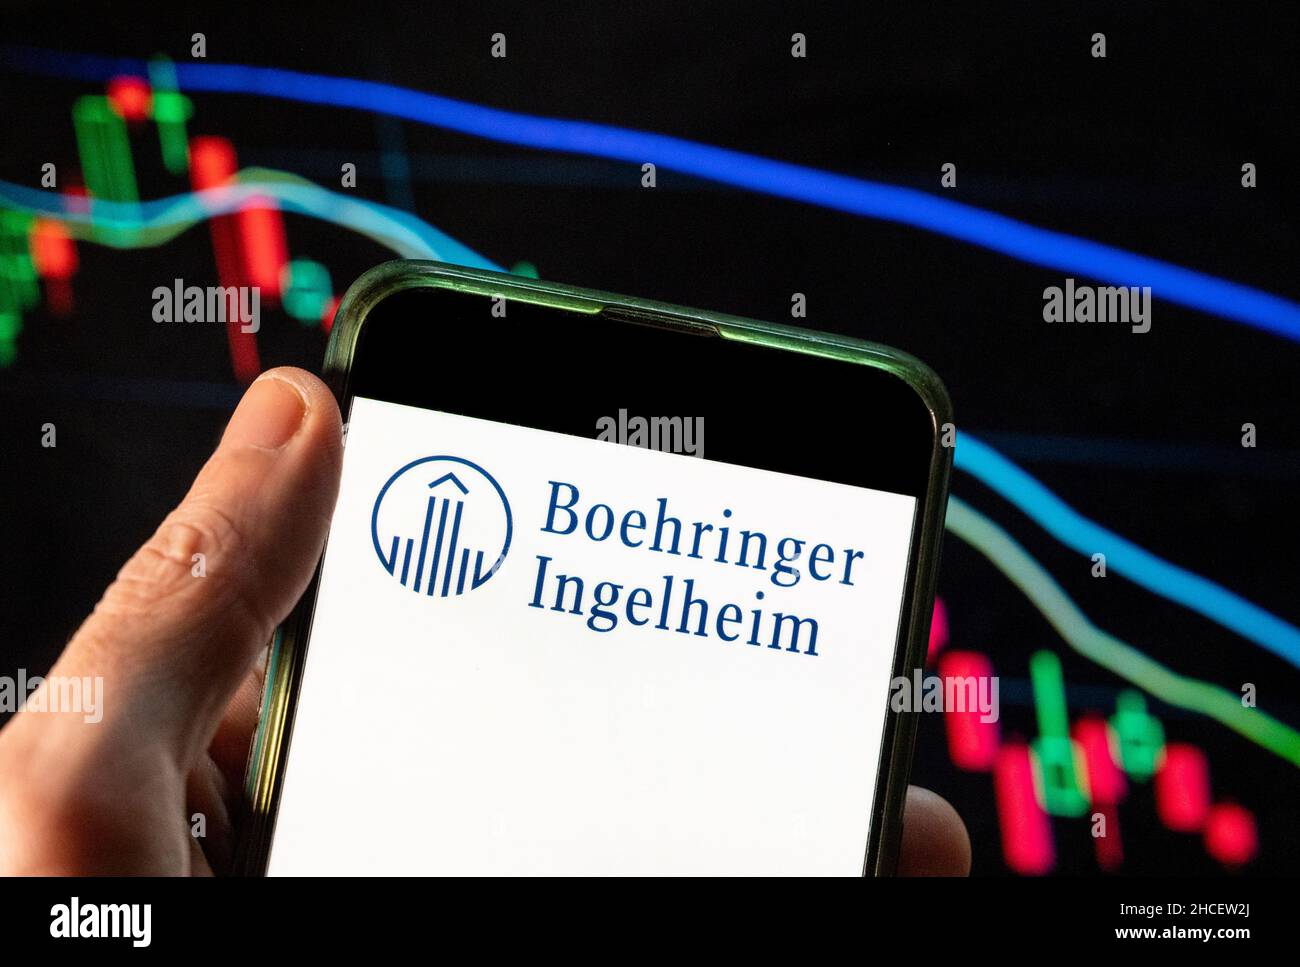 In questa foto è illustrato il logo della società farmaceutica tedesca Boehringer Ingelheim, un'azienda farmaceutica guidata dalla ricerca, visualizzato su uno smartphone con un grafico dell'indice delle borse economiche sullo sfondo. Foto Stock